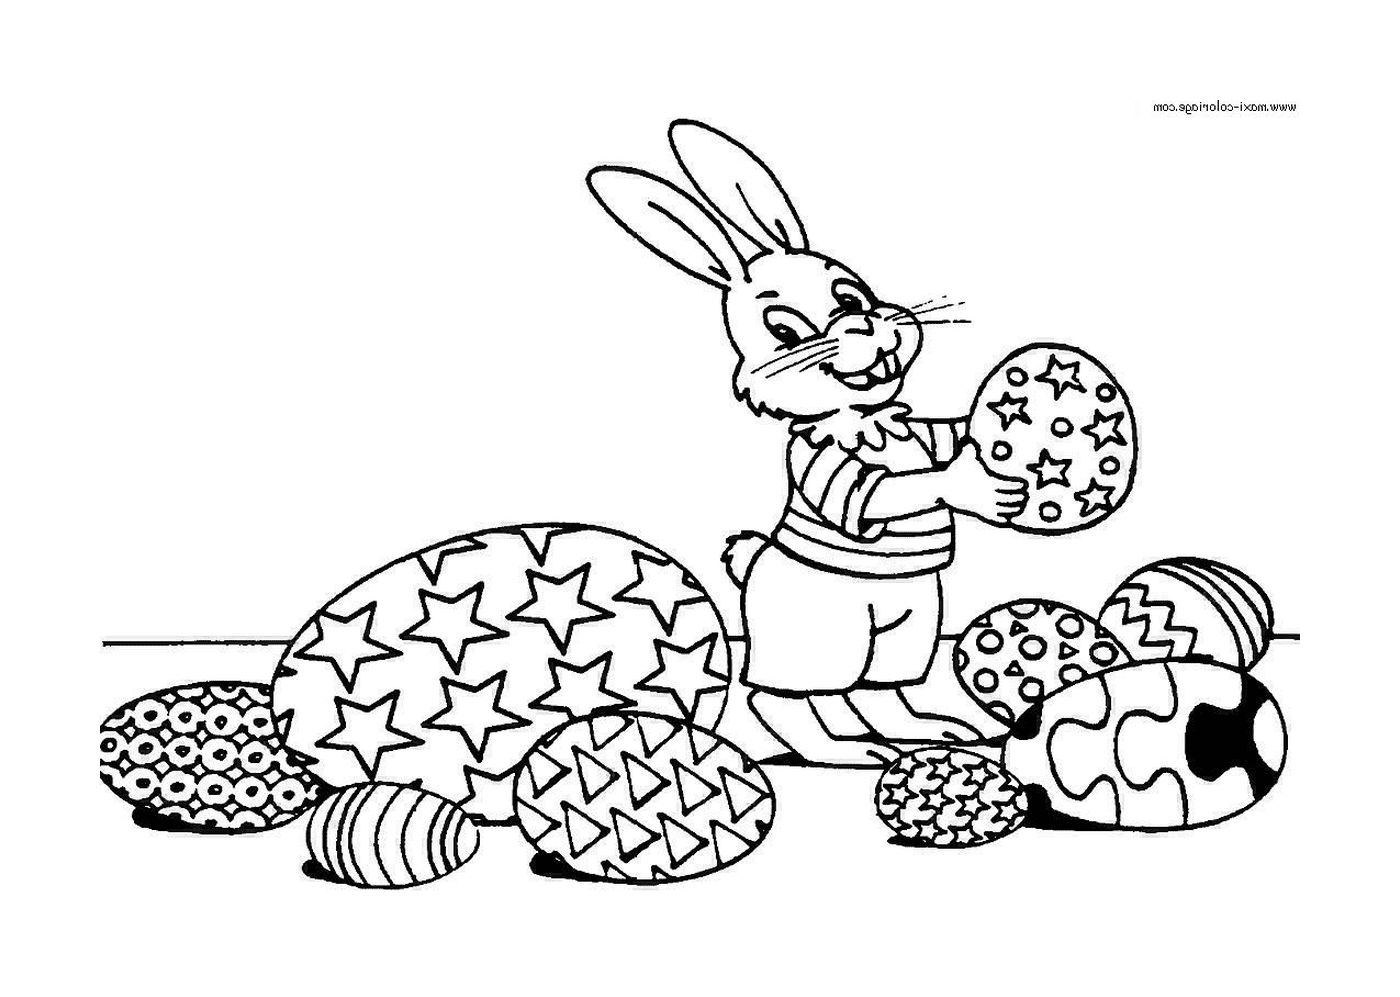  Кролик держит печенье в руке 